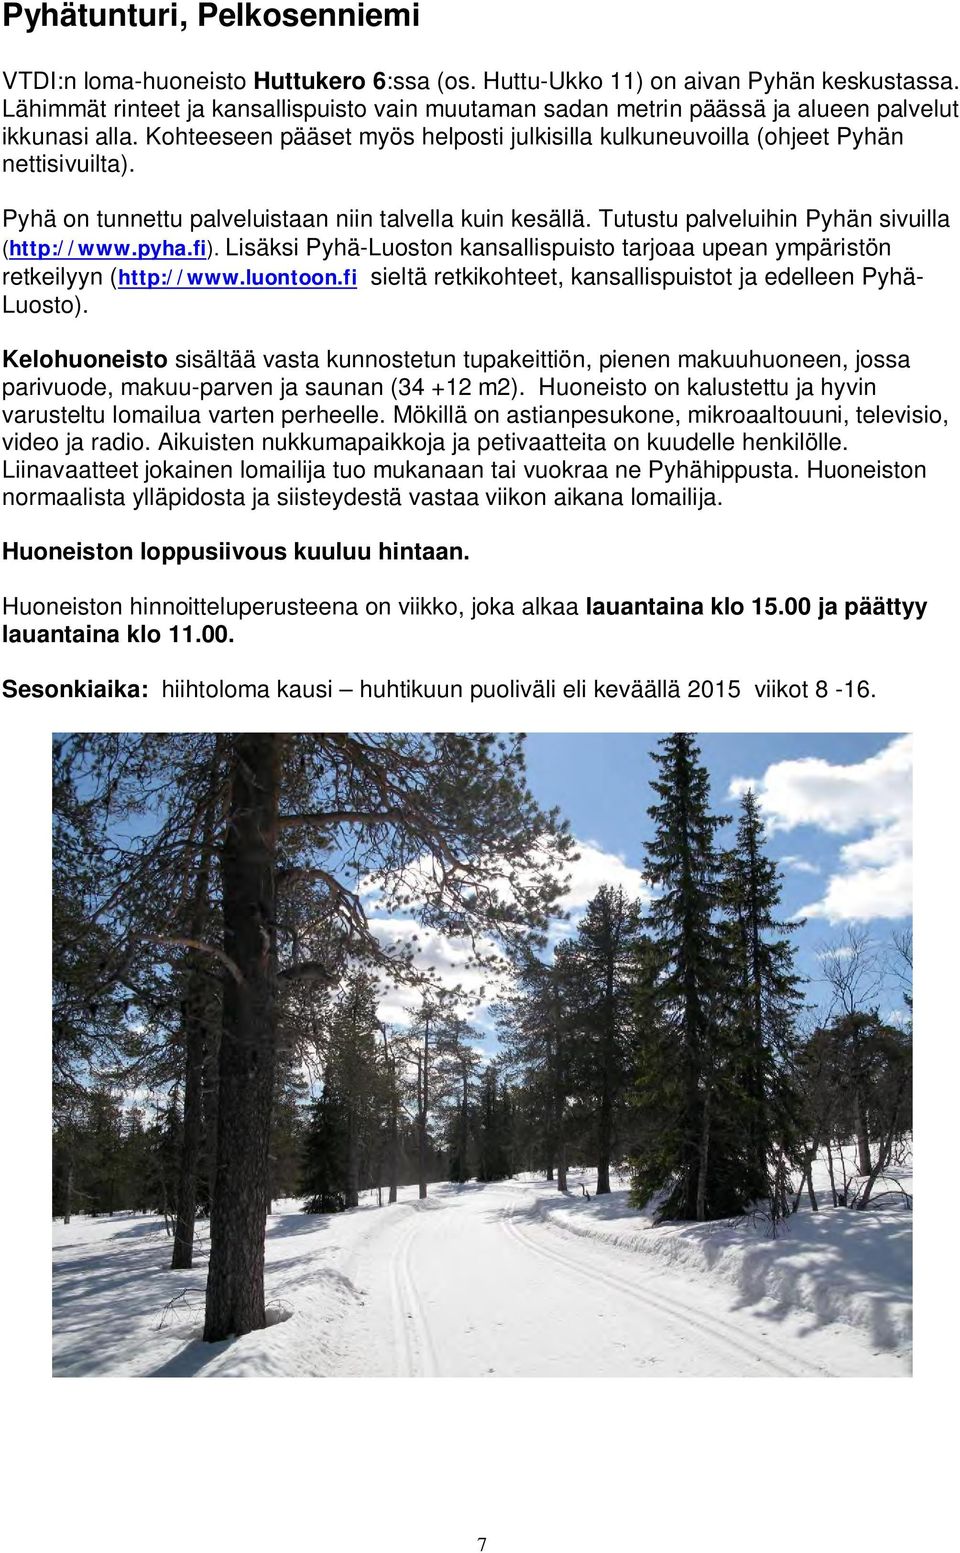 Pyhä on tunnettu palveluistaan niin talvella kuin kesällä. Tutustu palveluihin Pyhän sivuilla (http://www.pyha.fi).